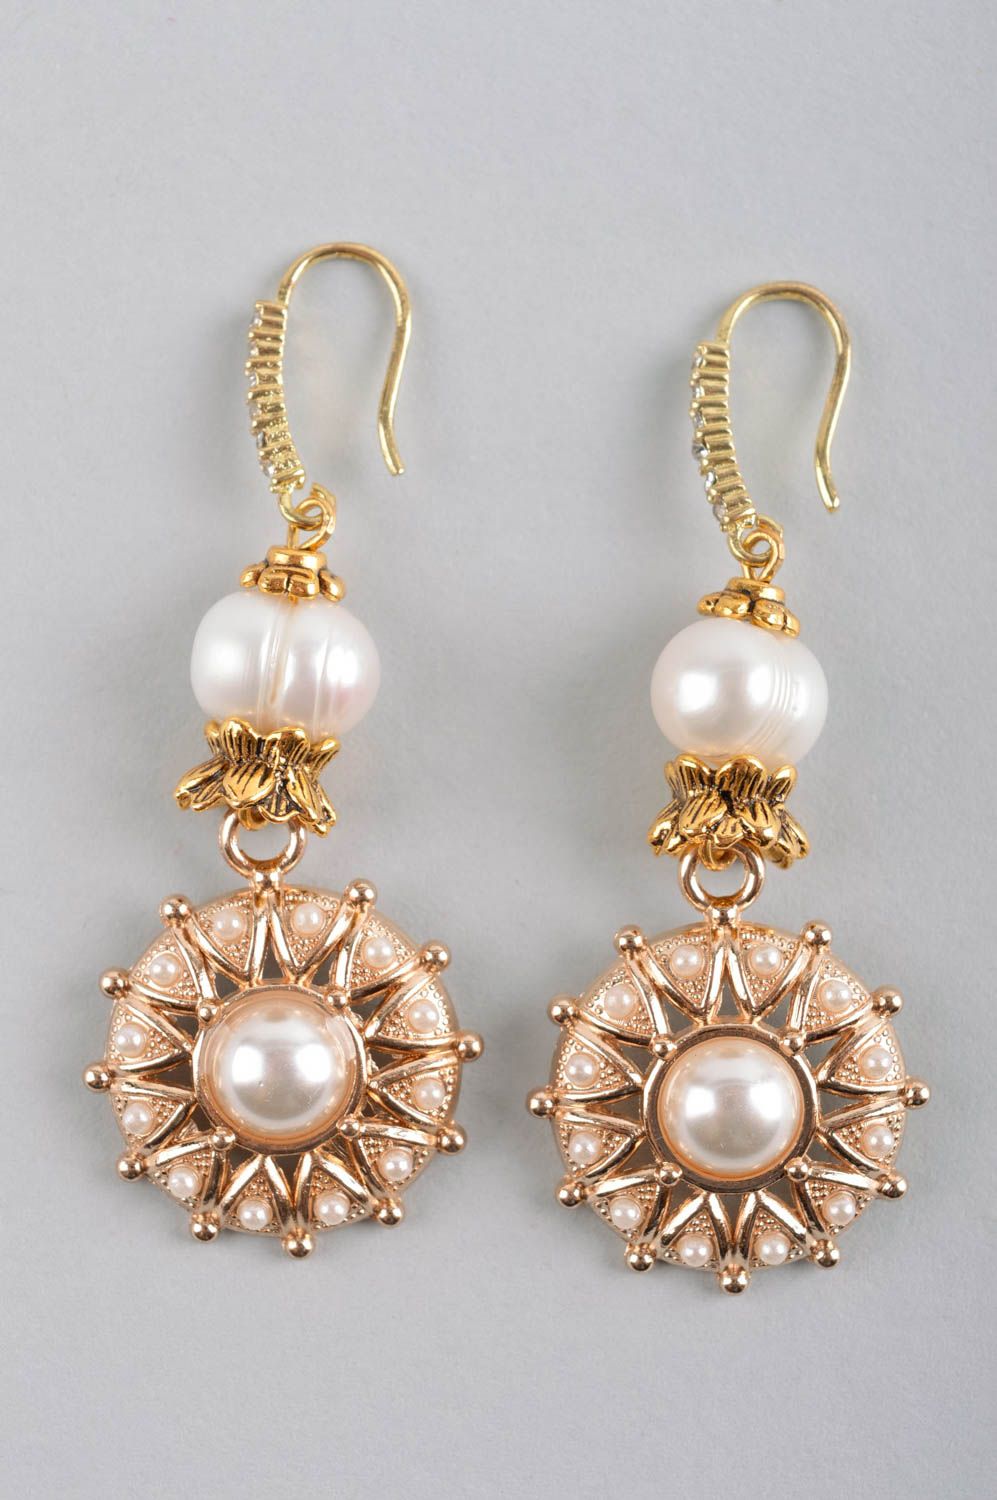 Handmade earrings pearl jewelry dangling earrings fashion accessories for women photo 4